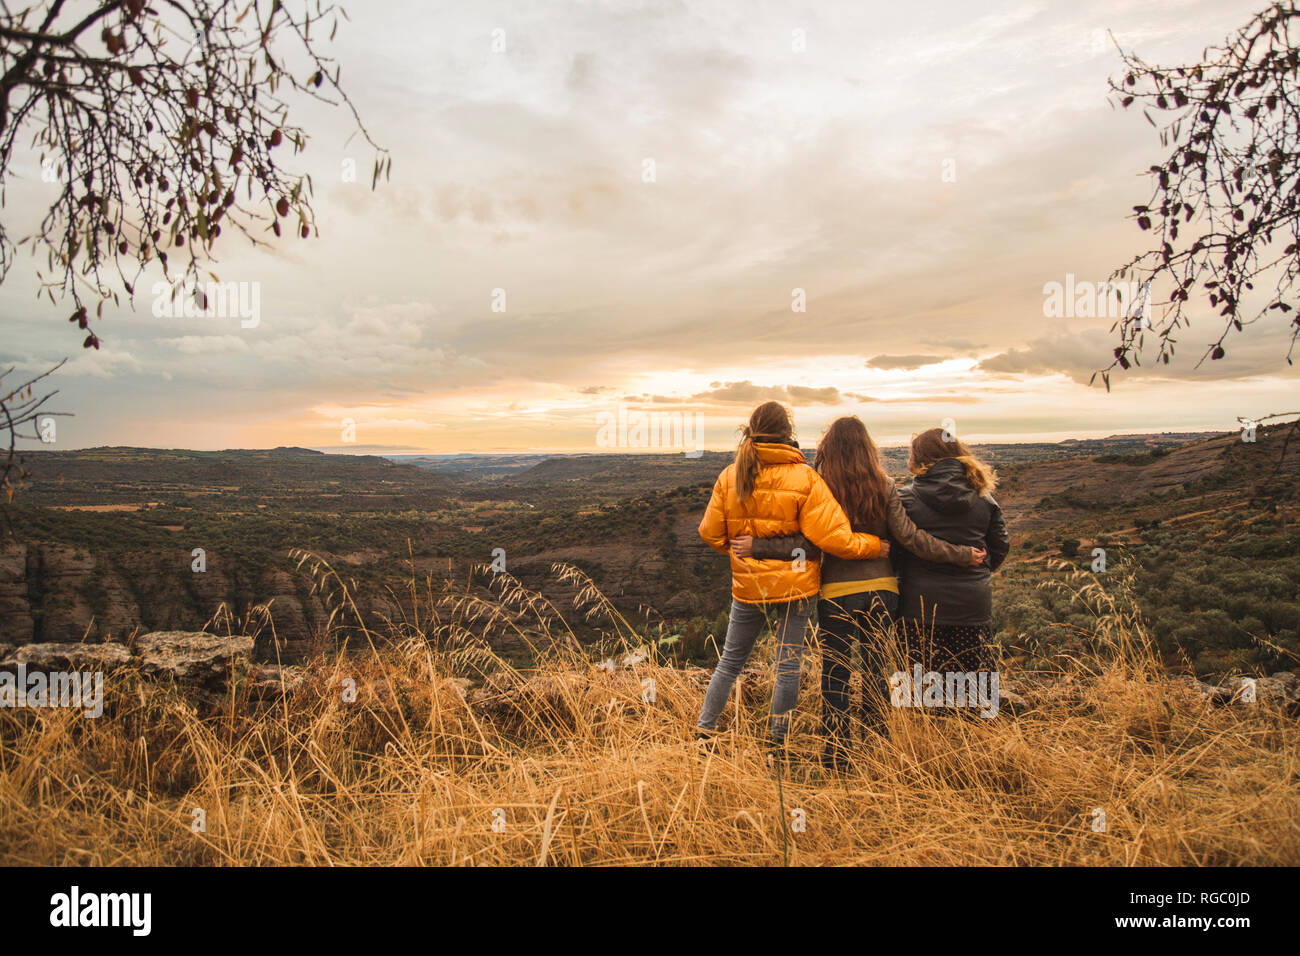 Spagna, Alquezar, tre amici abbracciando sulla cima di una collina che domina il paesaggio Foto Stock